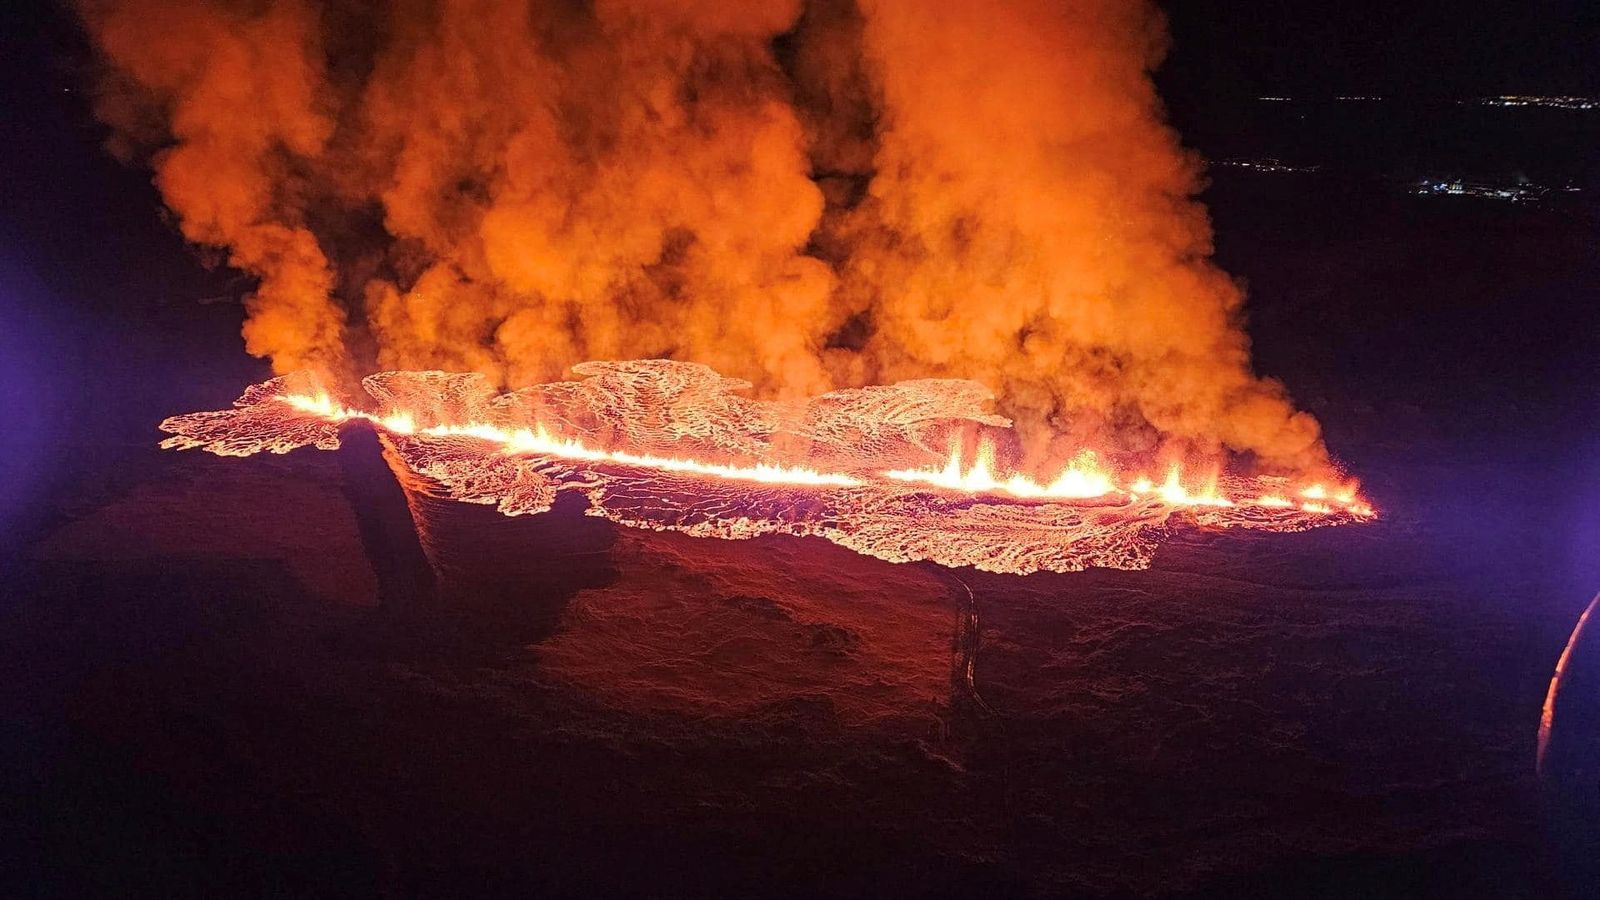 アイスランドで火山が噴火 – 溶岩が漁村の防御を突破 | 世界のニュース